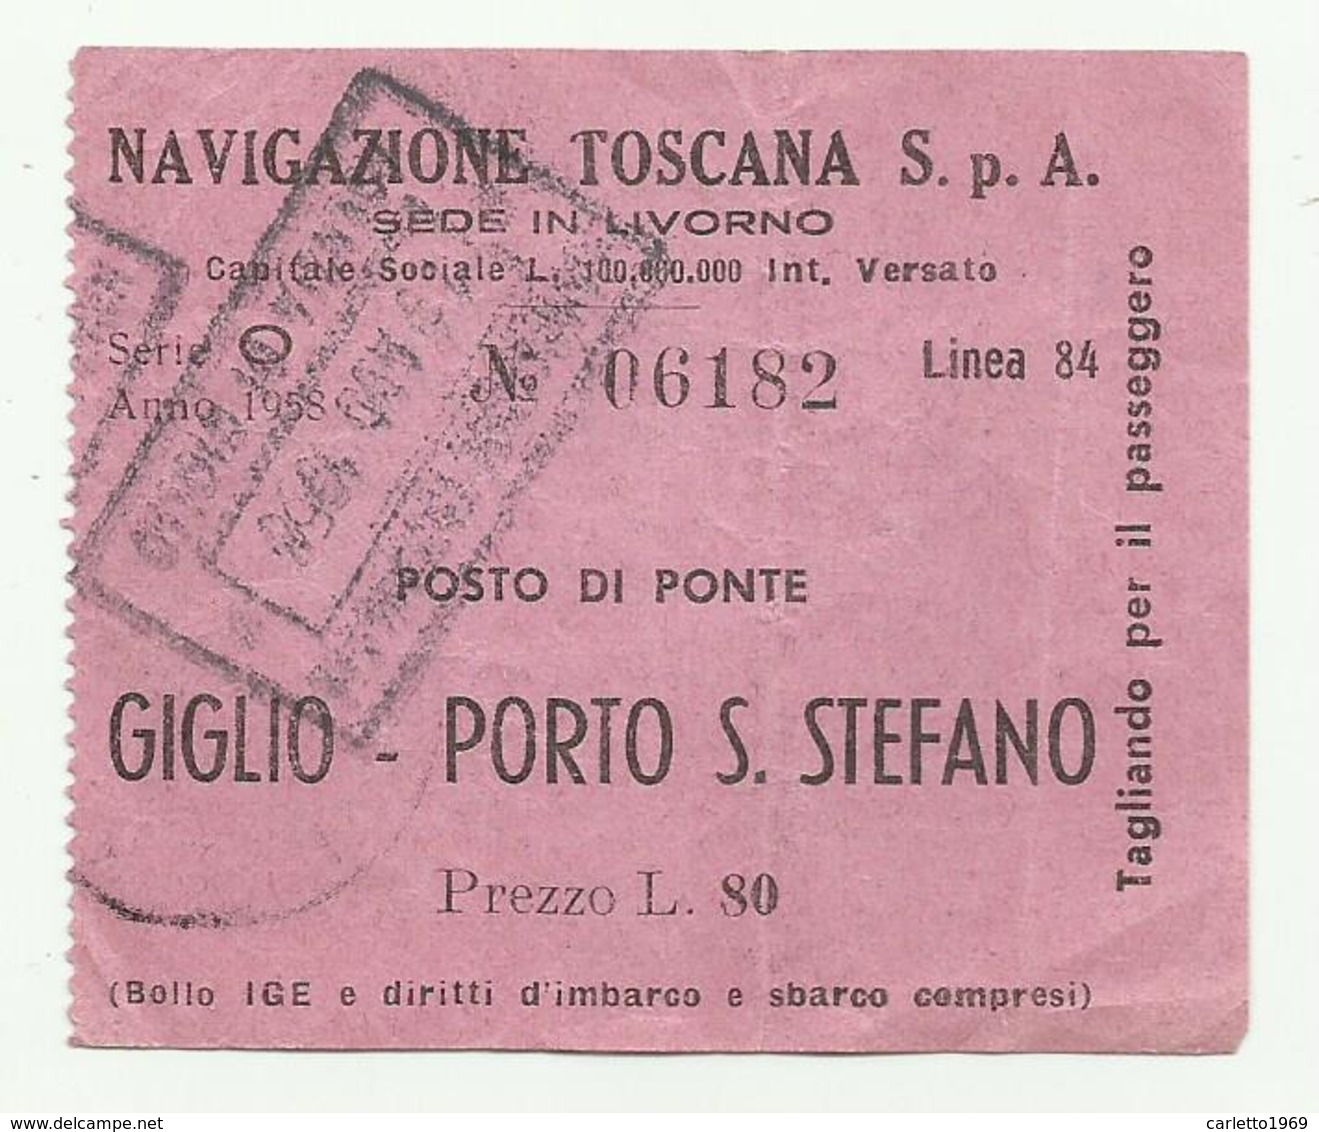 NAVIGAZIONE TOSCANA BIGLIETTO GIGLIO - PORTO S.STEFANO 1958 - Europe